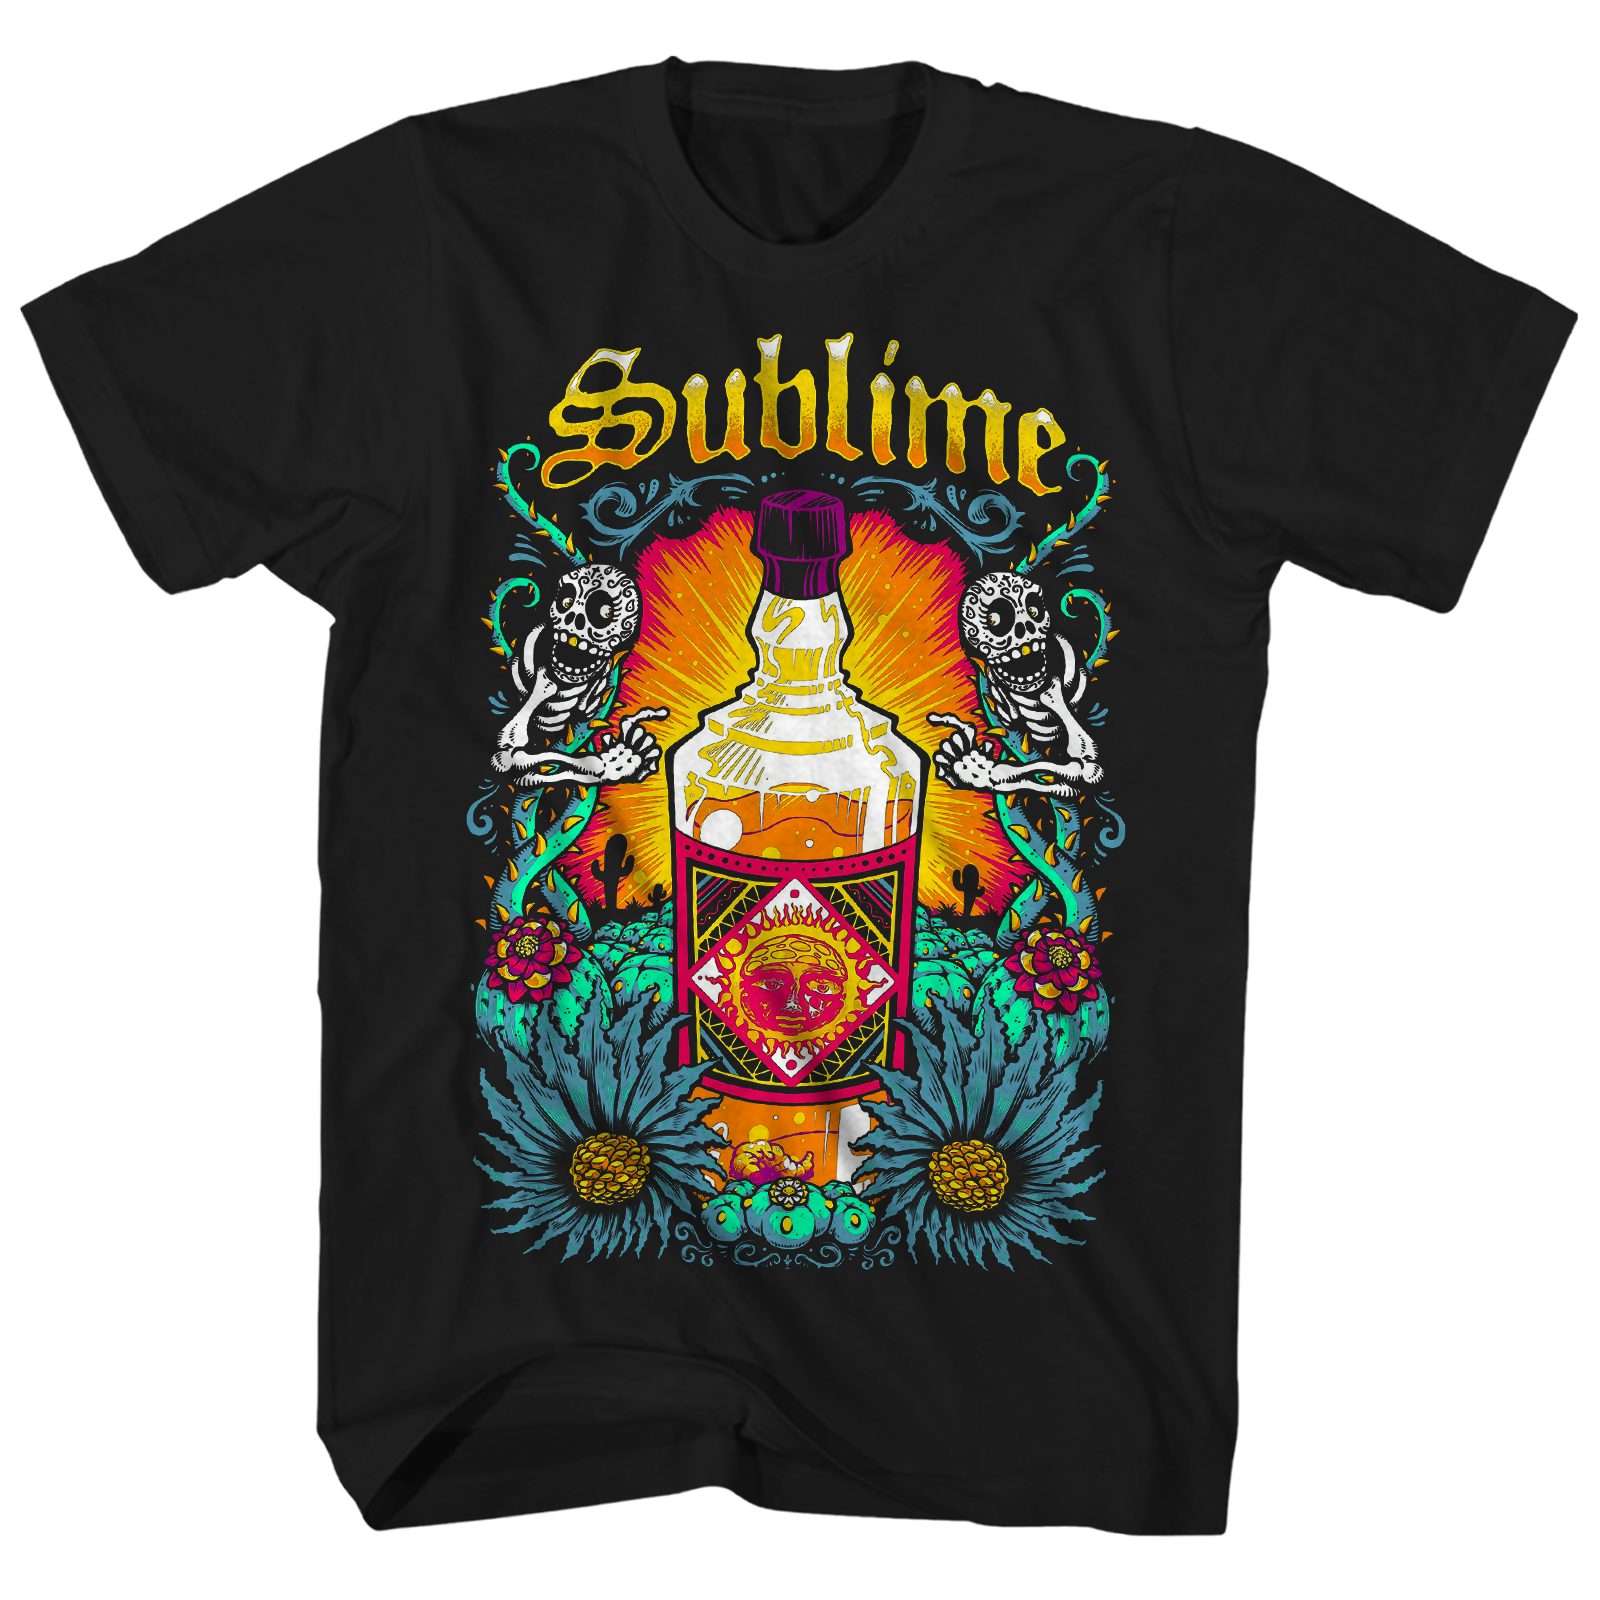 sublime t shirt